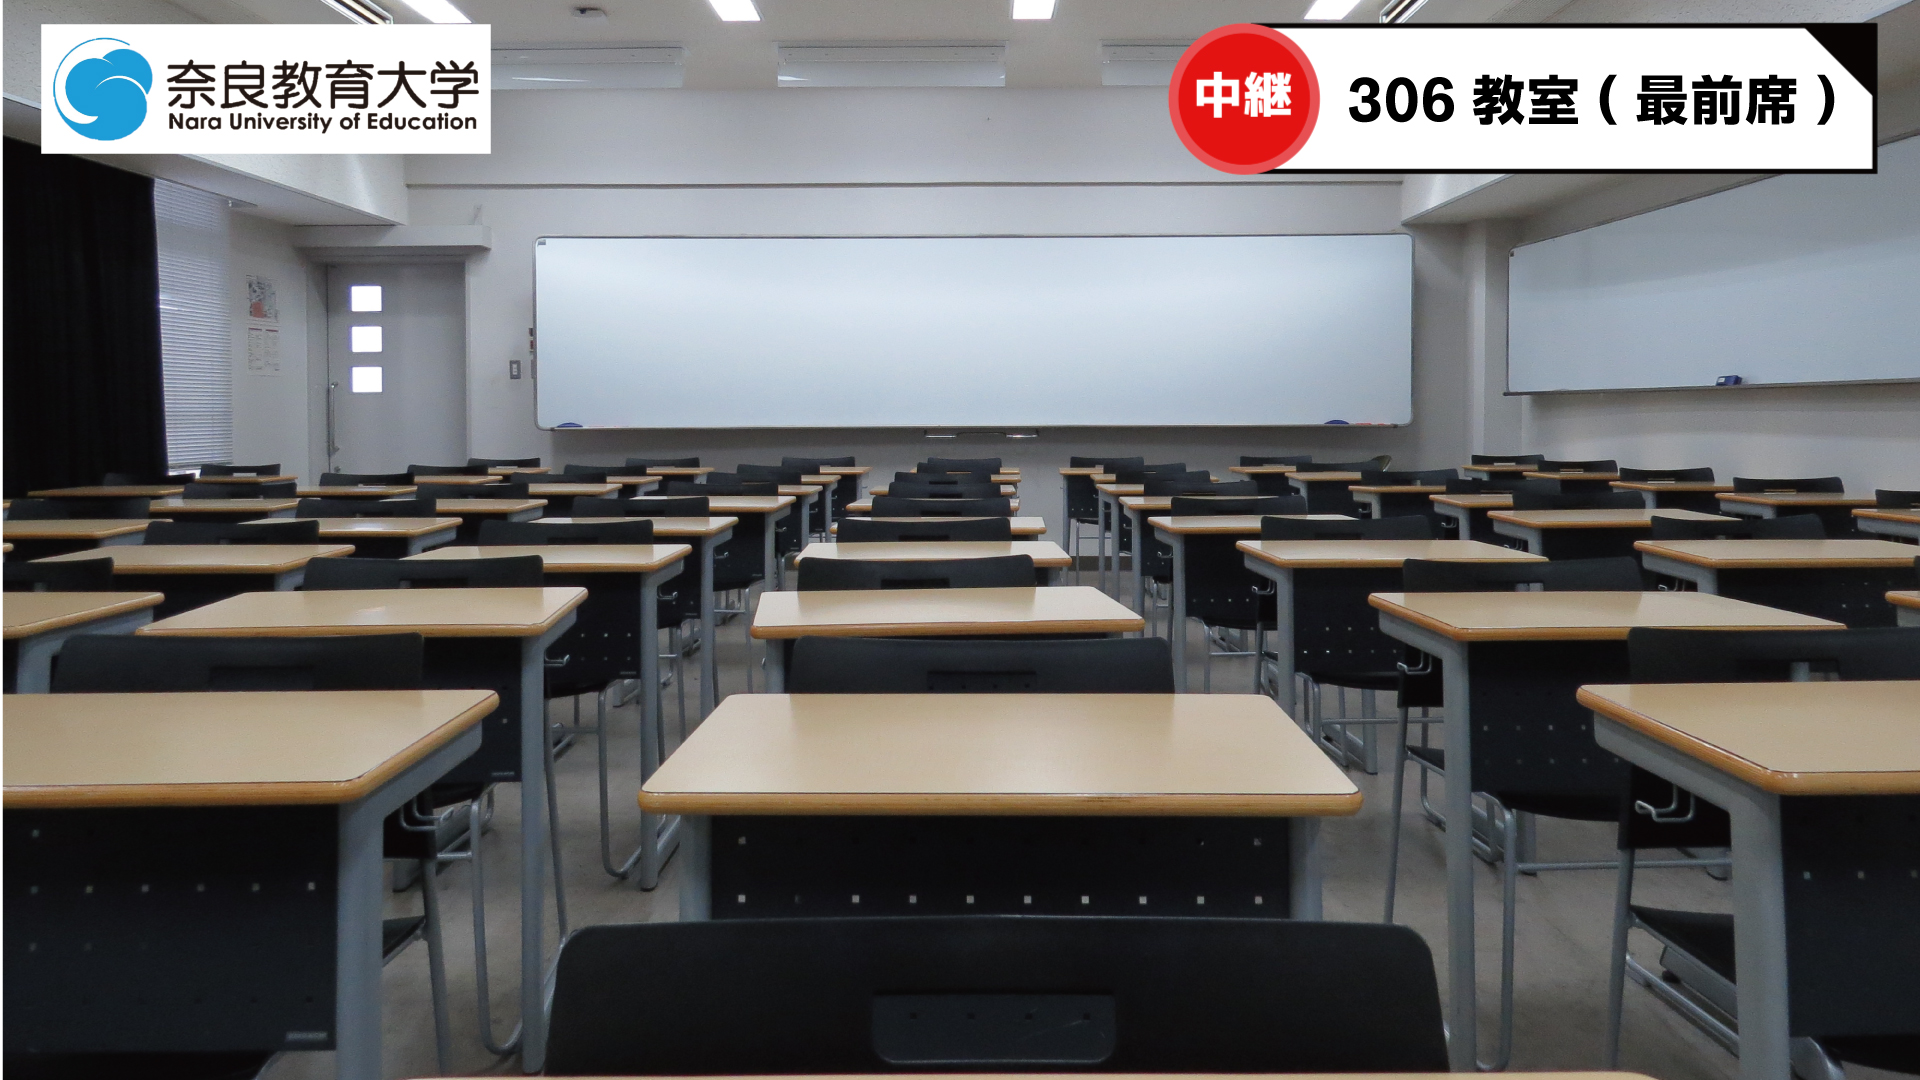 306教室(最前席).jpg